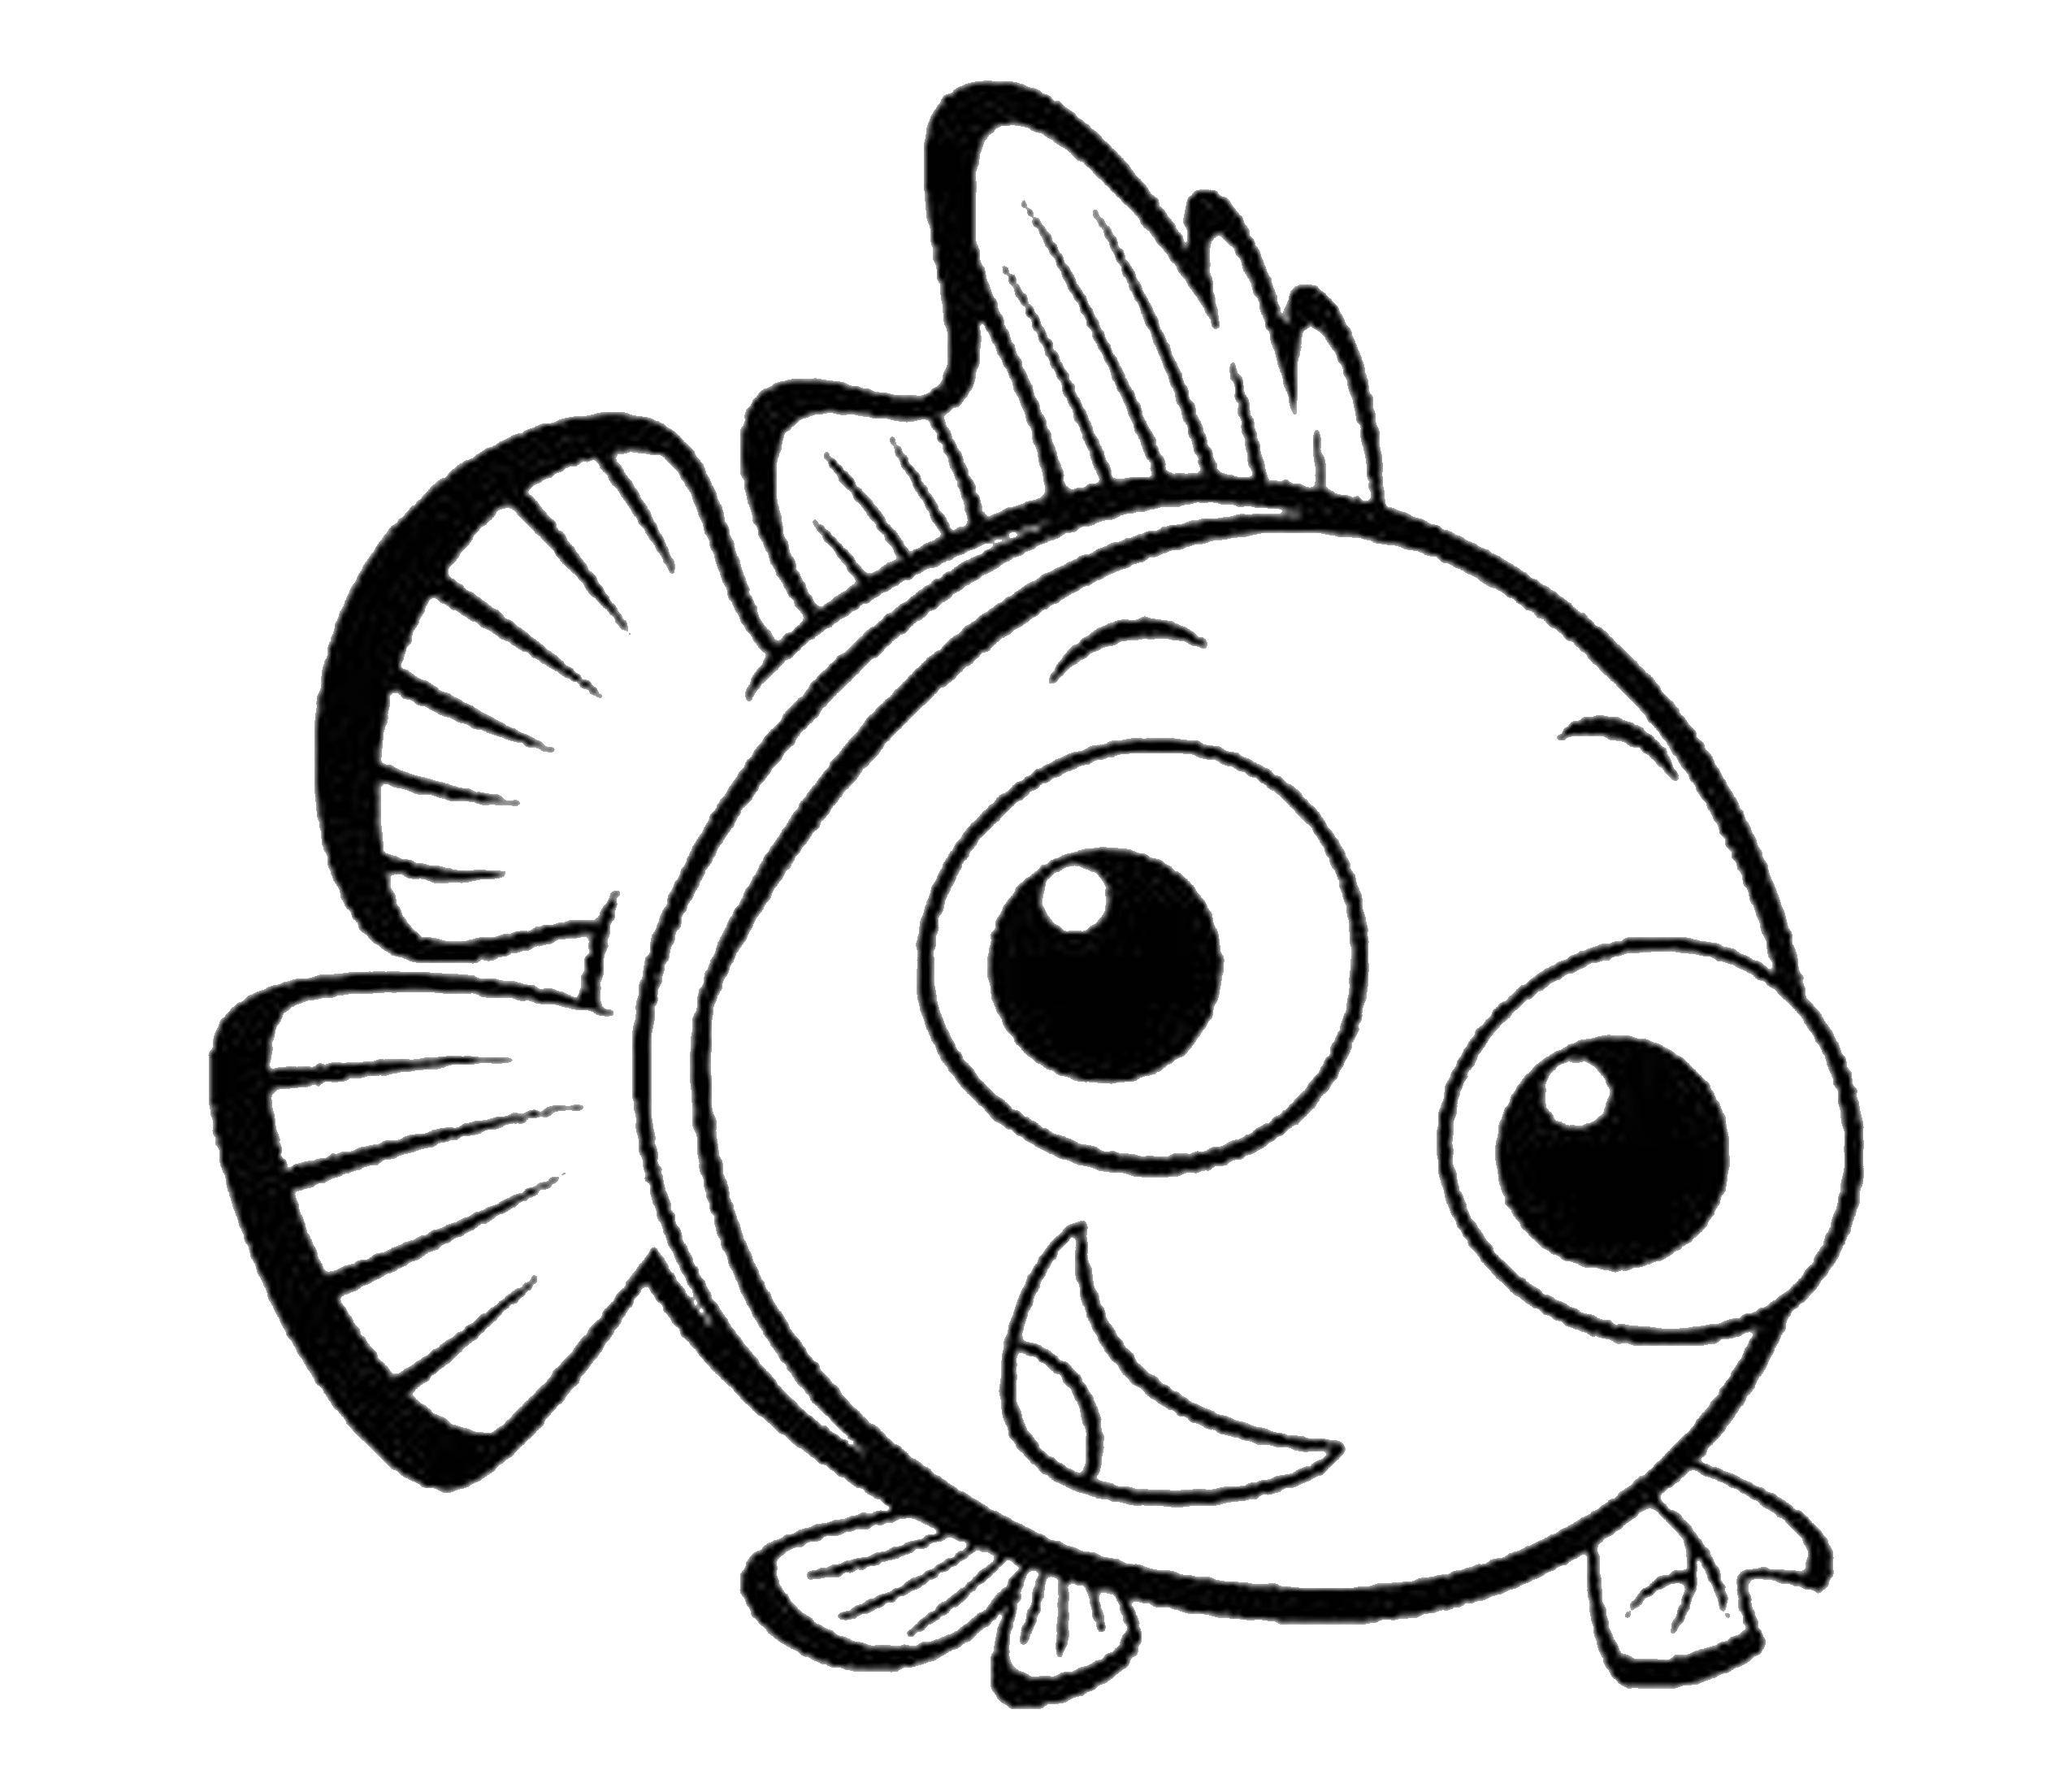 Название: Раскраска Рыбка. Категория: Диснеевские раскраски. Теги: Подводный мир, рыба.